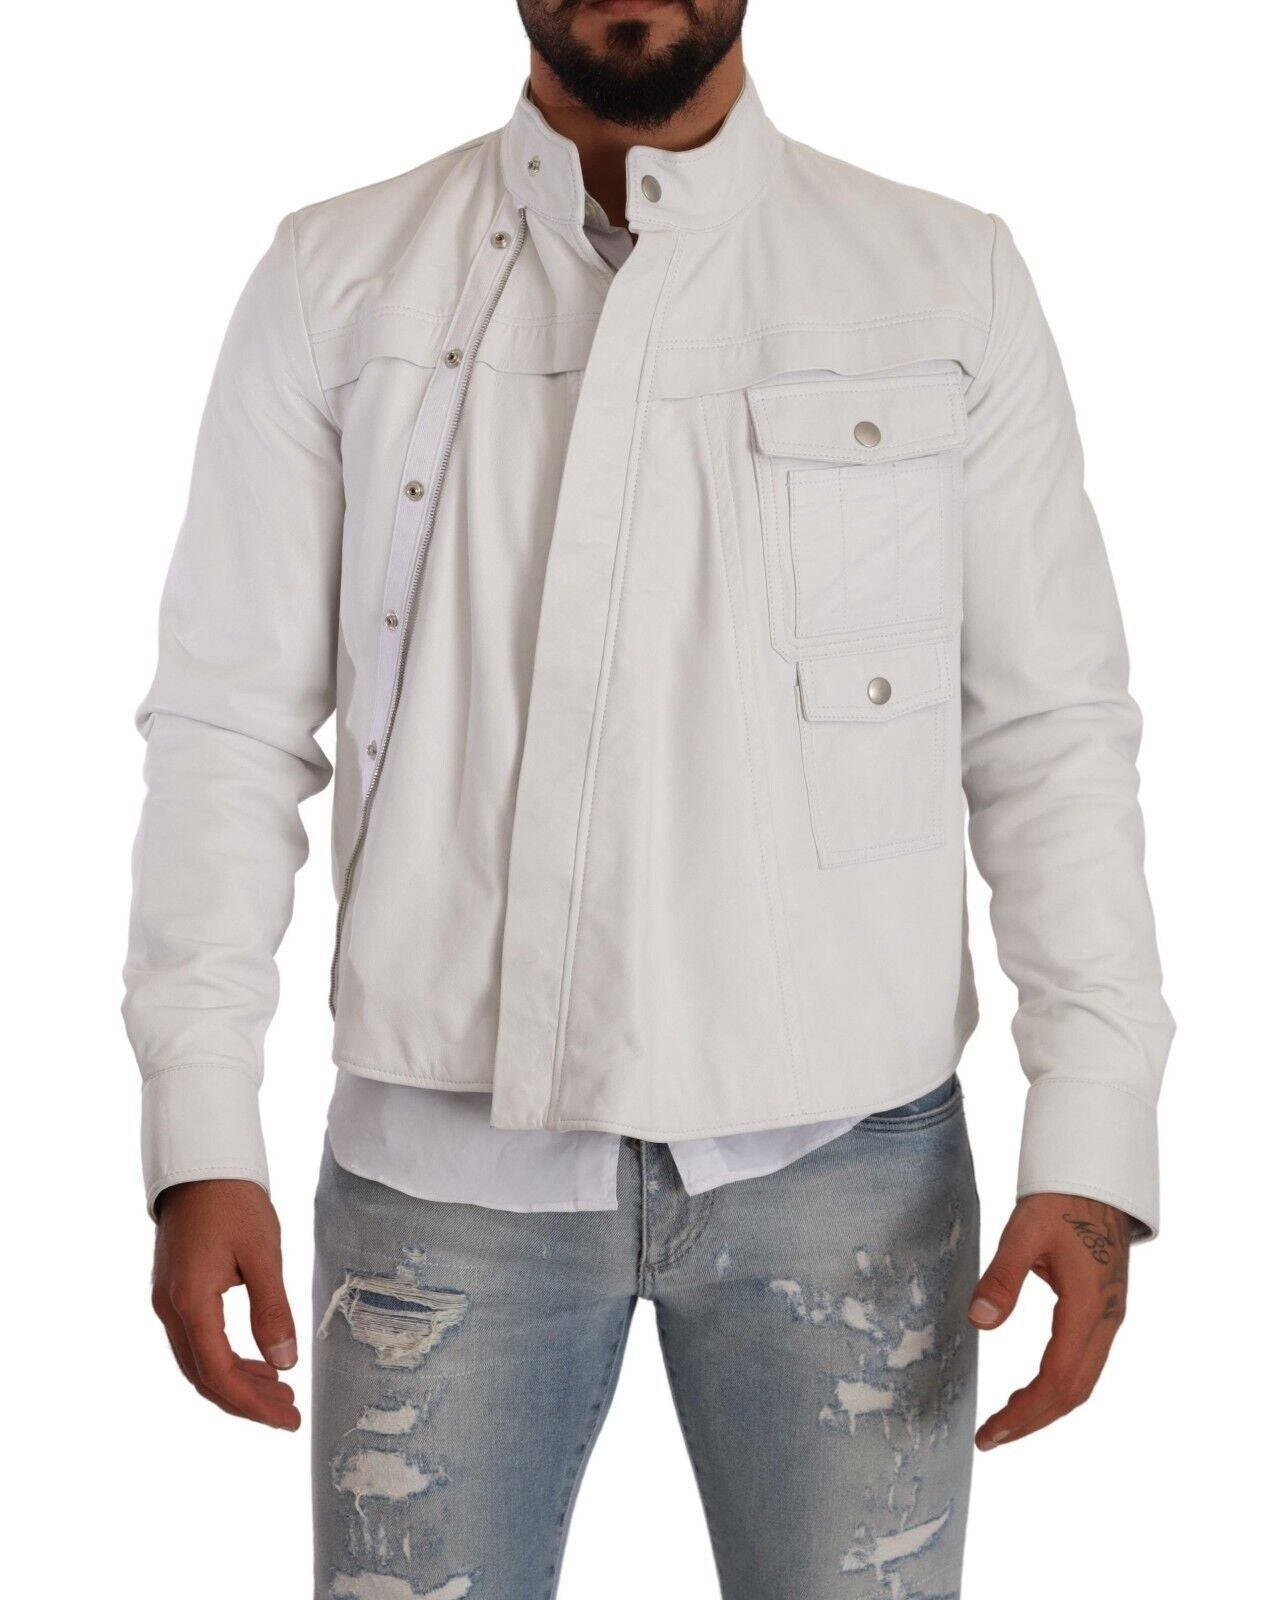 Diesel Exquisite White Leather Biker Jacket